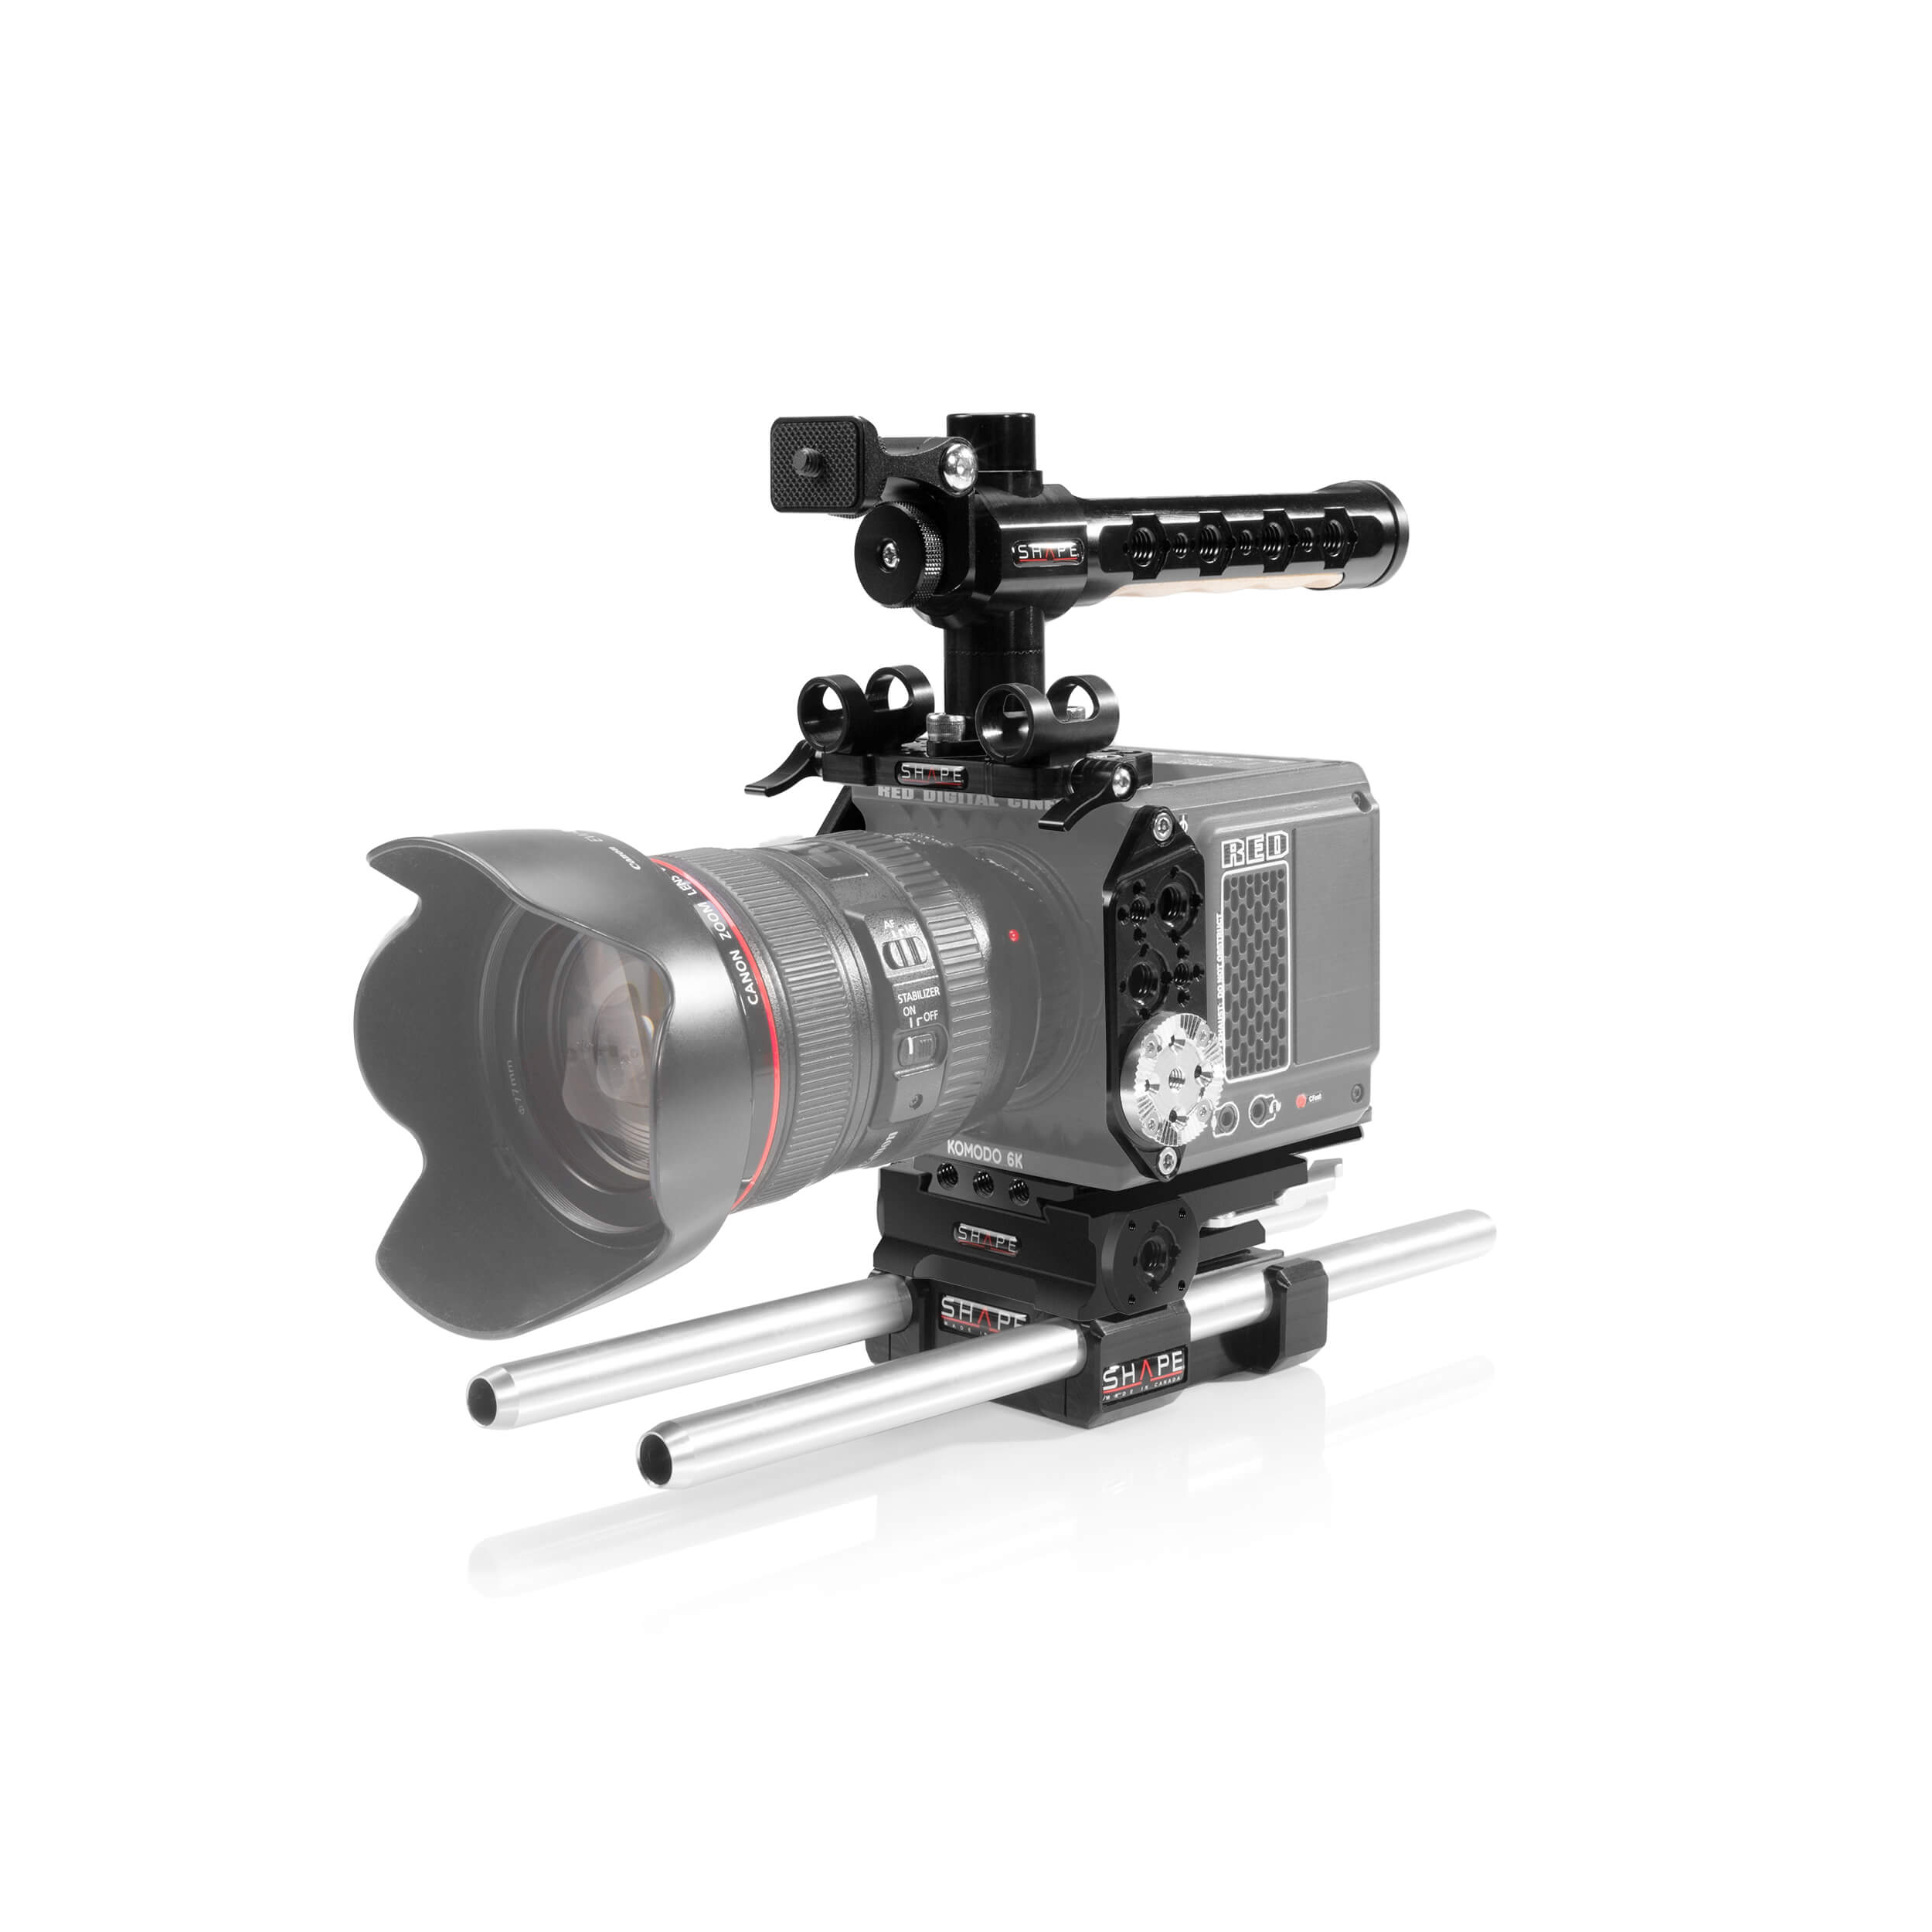 Formez une cage de caméra complète avec un système de canne LW de 15 mm pour le komodo rouge